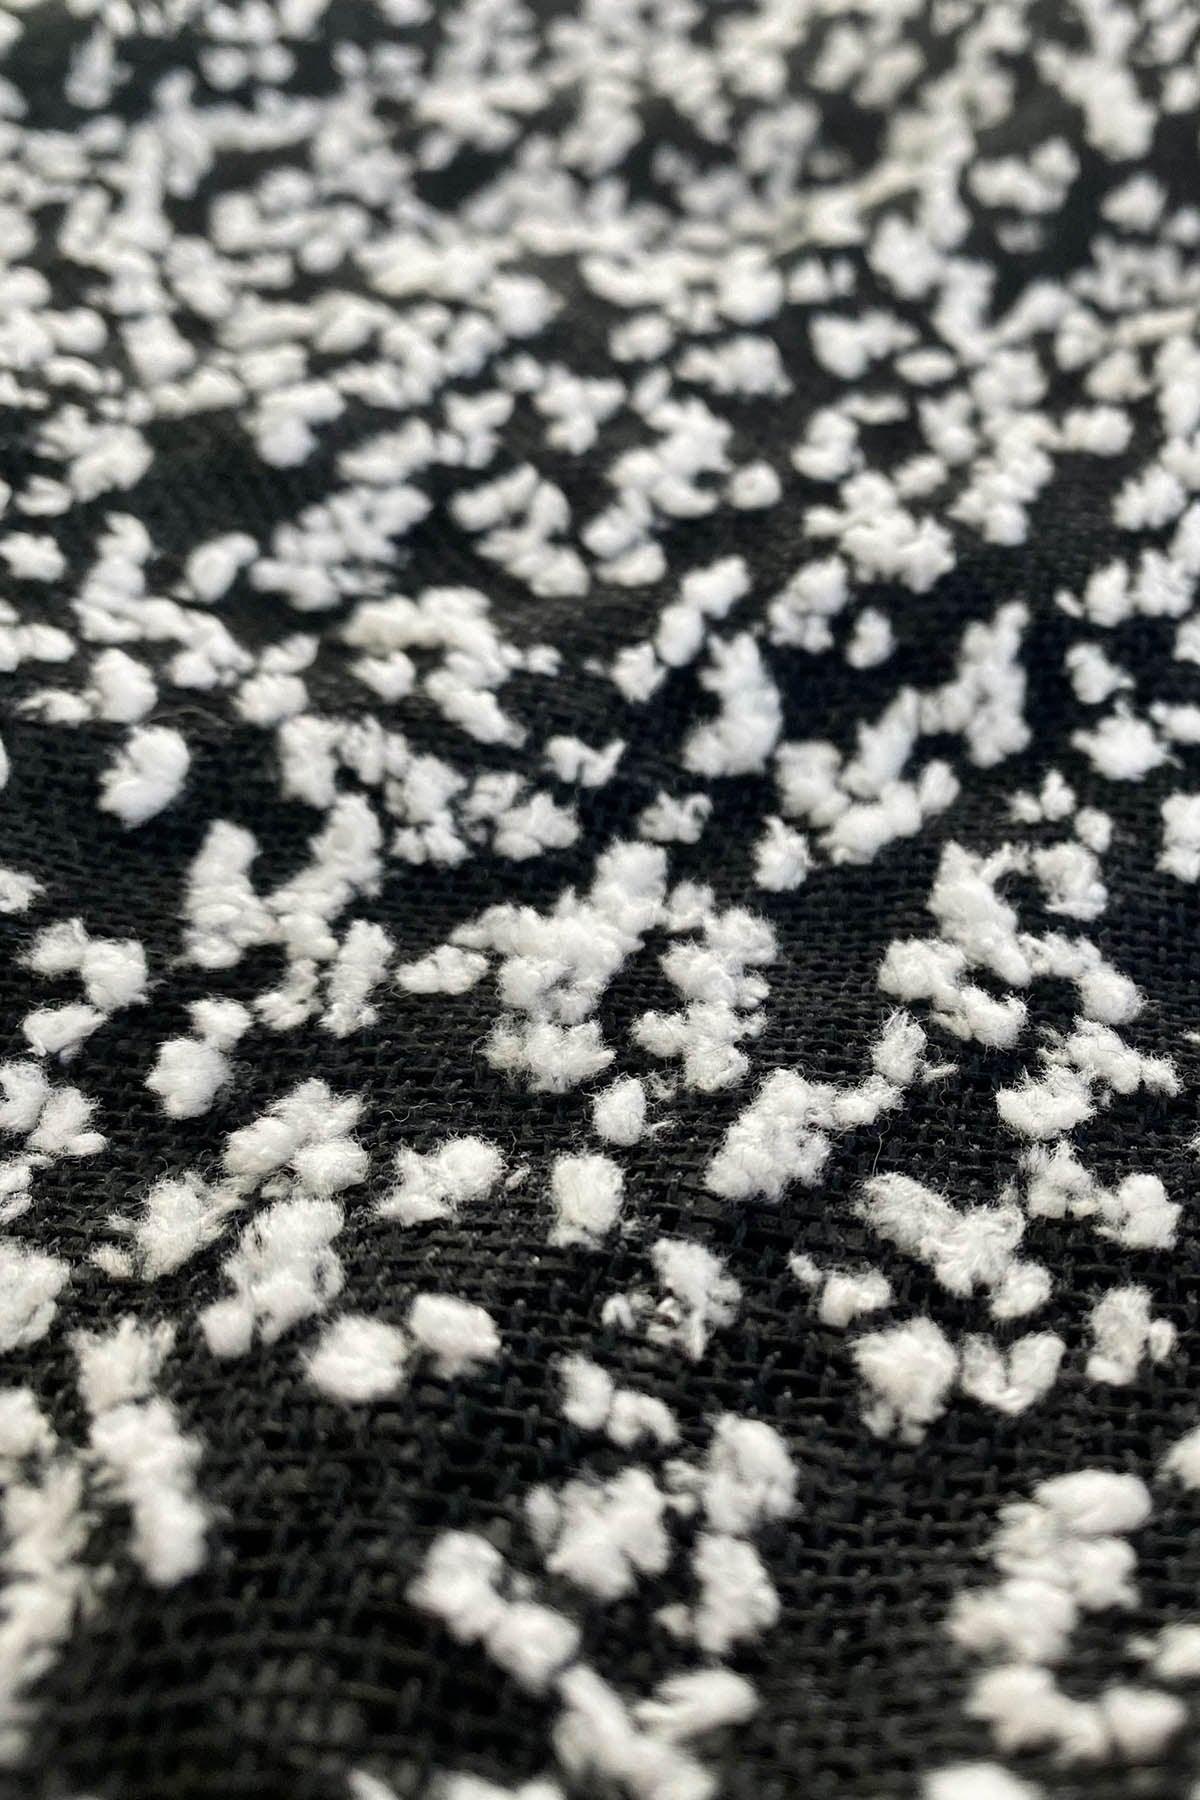 Dettaglio fantasia nera con pallini bianchi Scialle Giuliana realizzata a telaio manuale calabrese brand malia lab accessori artigianali 